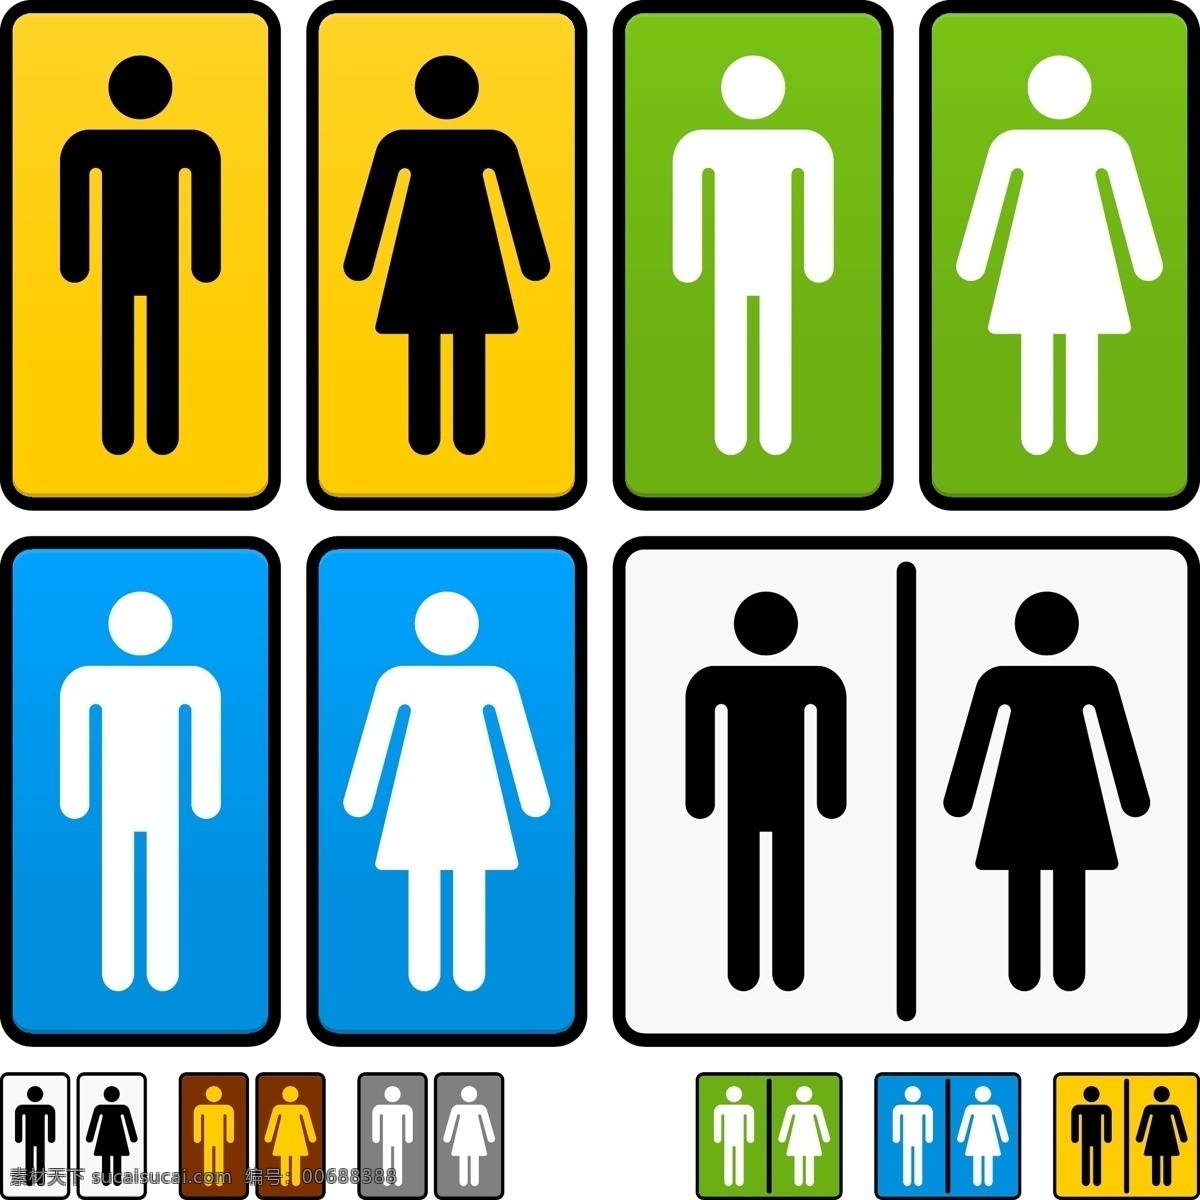 手间 洗手间标识 洗手间标志 男洗手间 女洗手间 men women 标识 卫生间标识